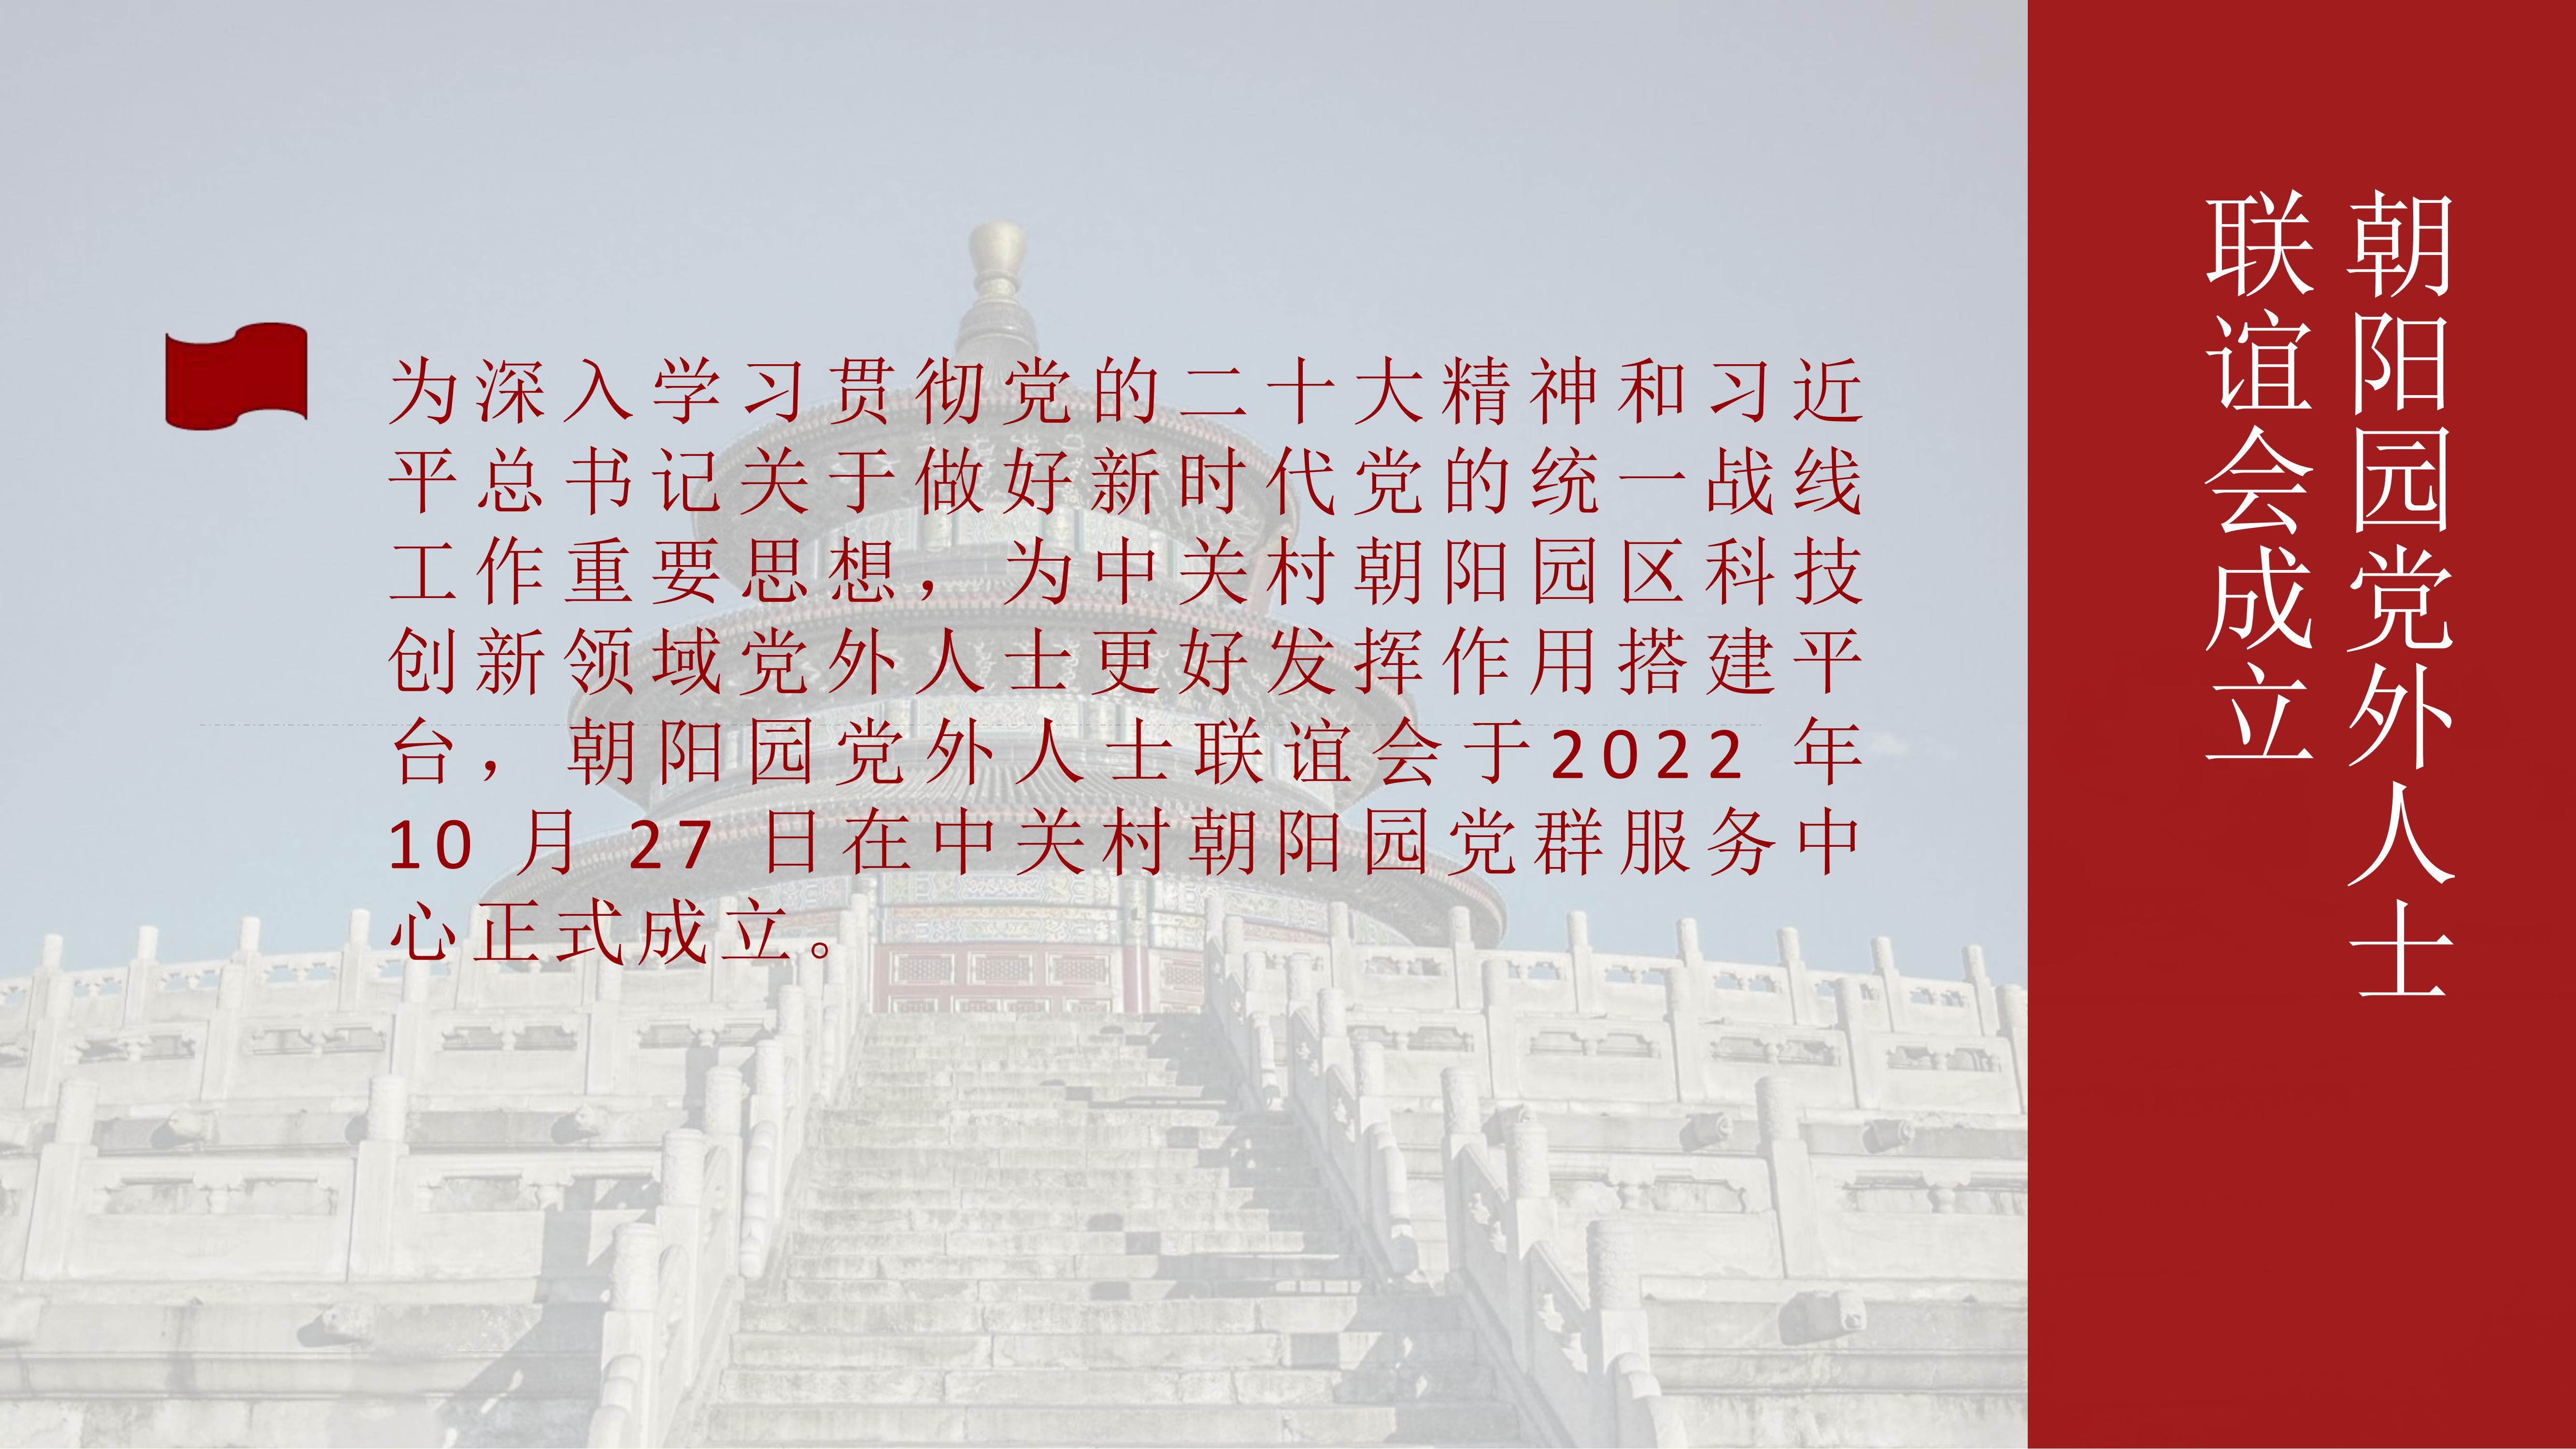 铭创未来总经理高亮先生成为中关村朝阳园党外人士联谊会理事(图2)